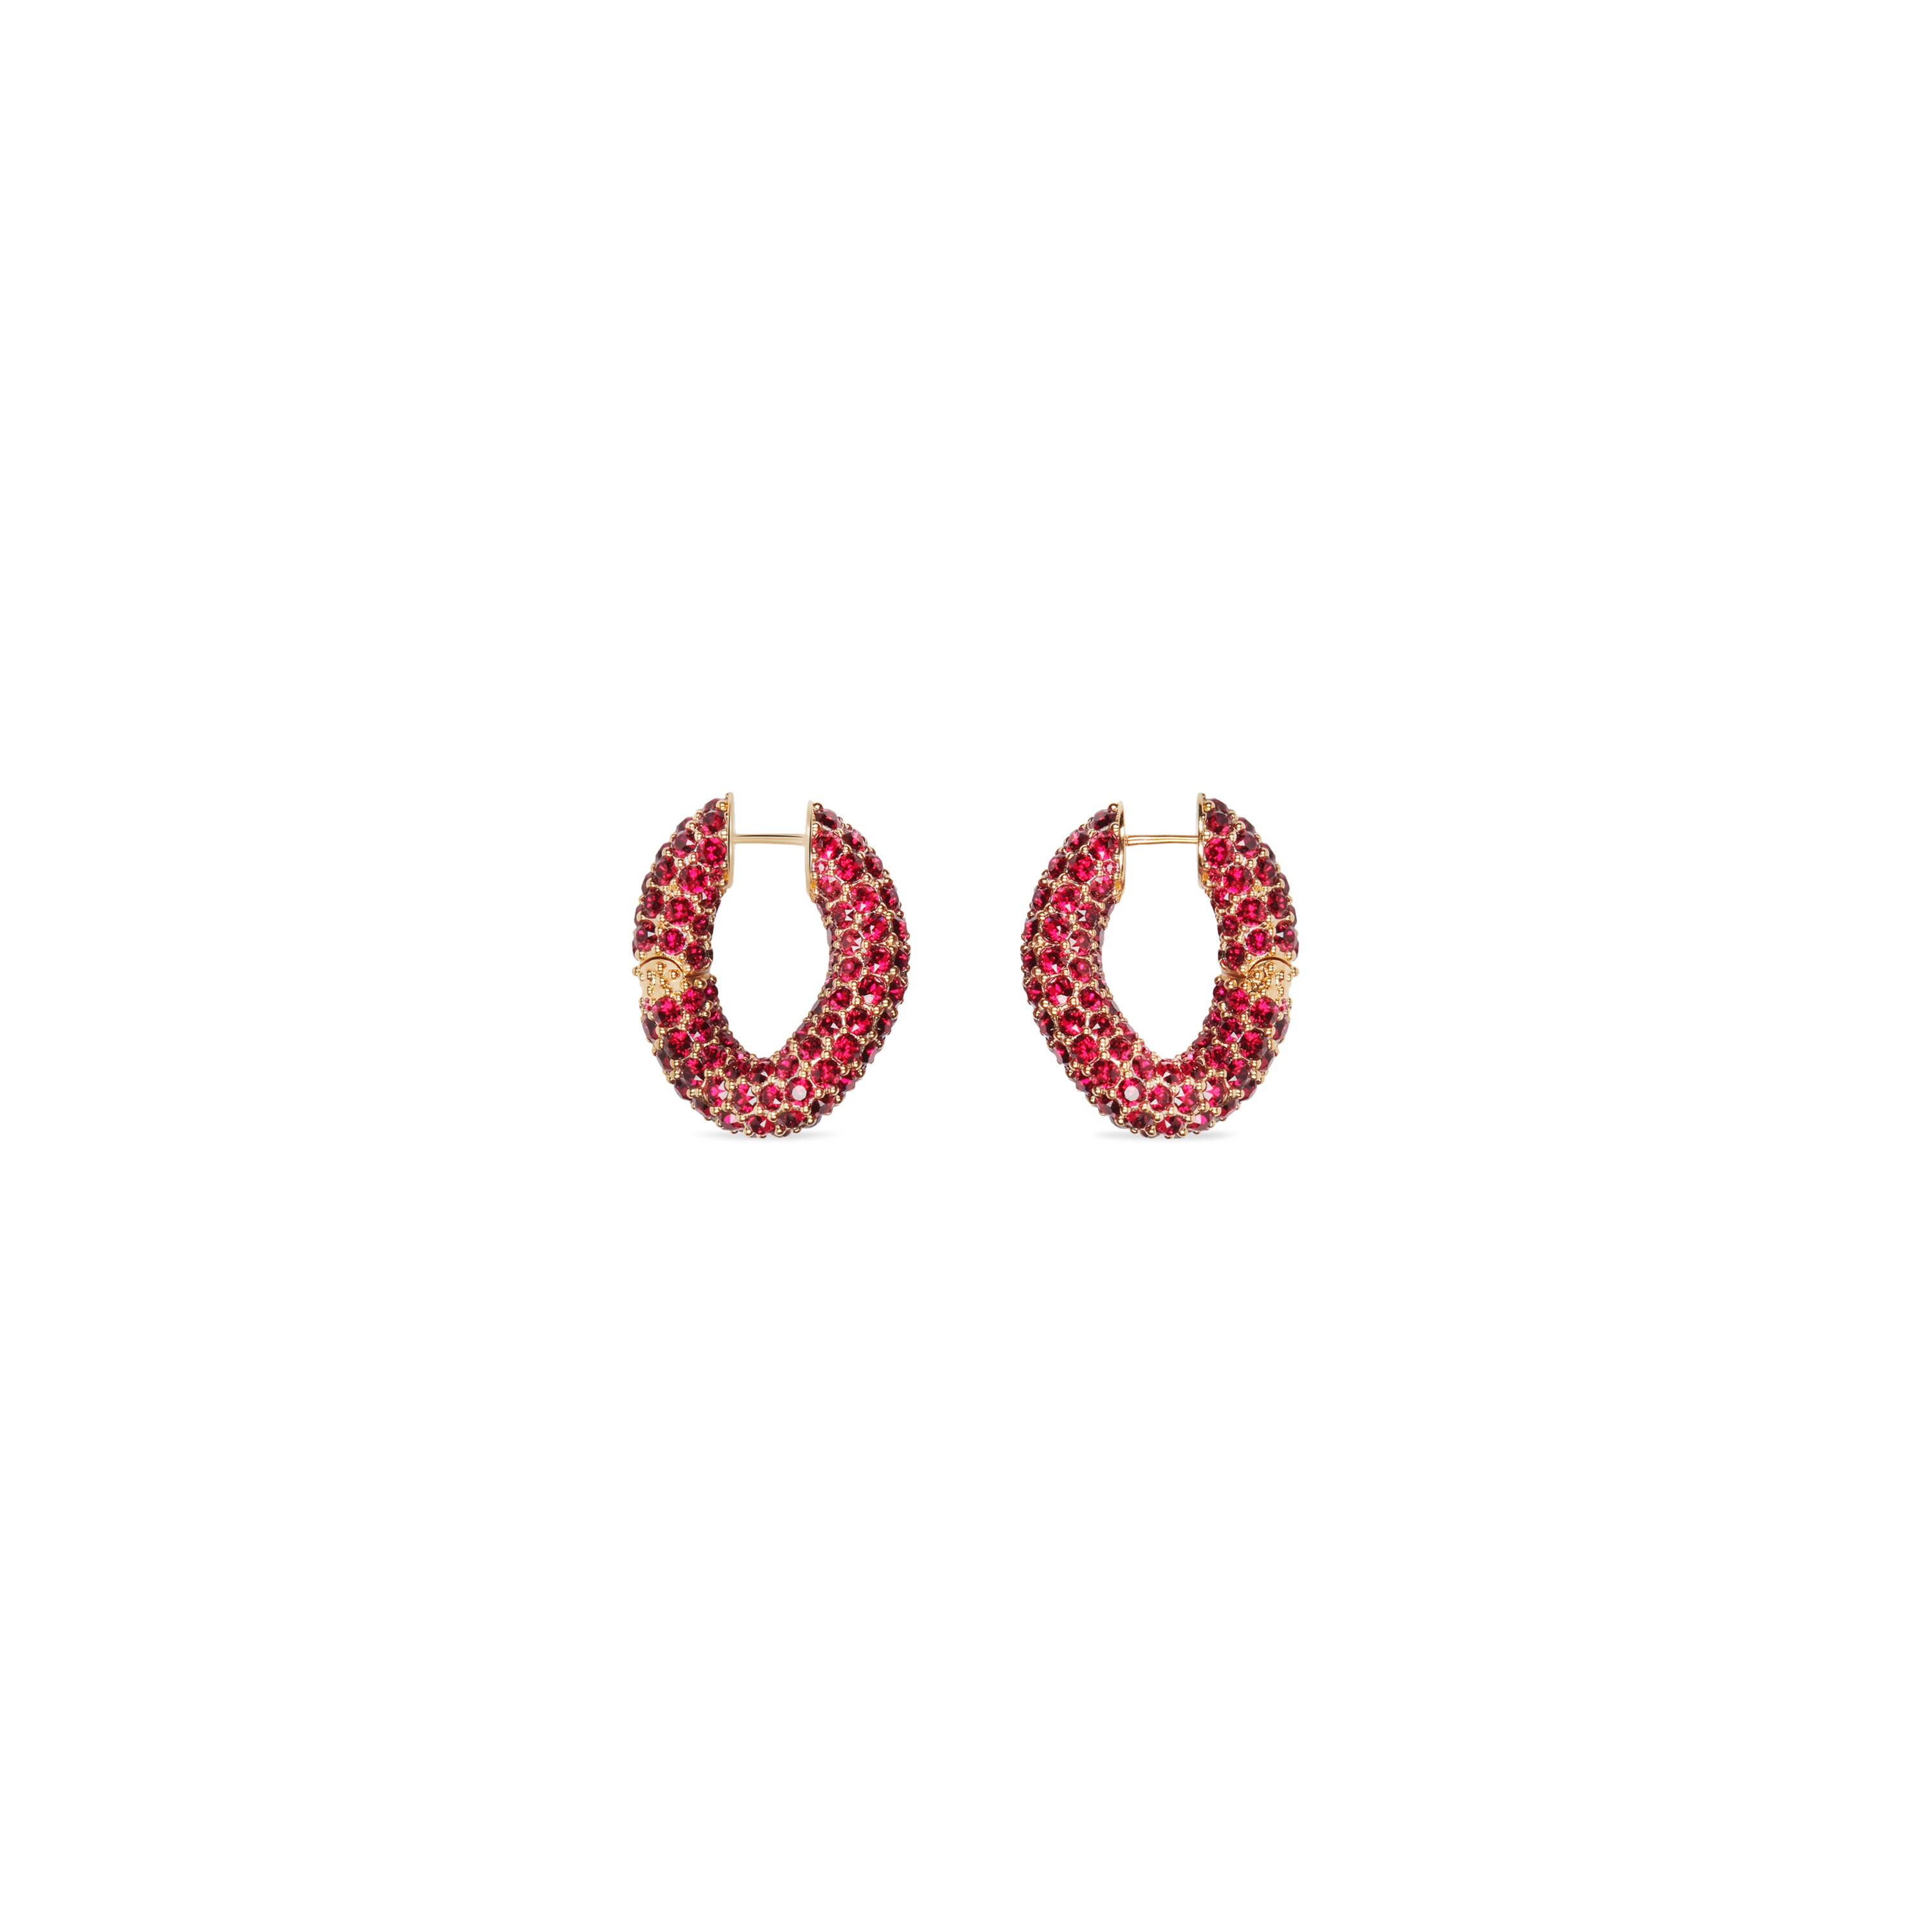 loop xs earrings